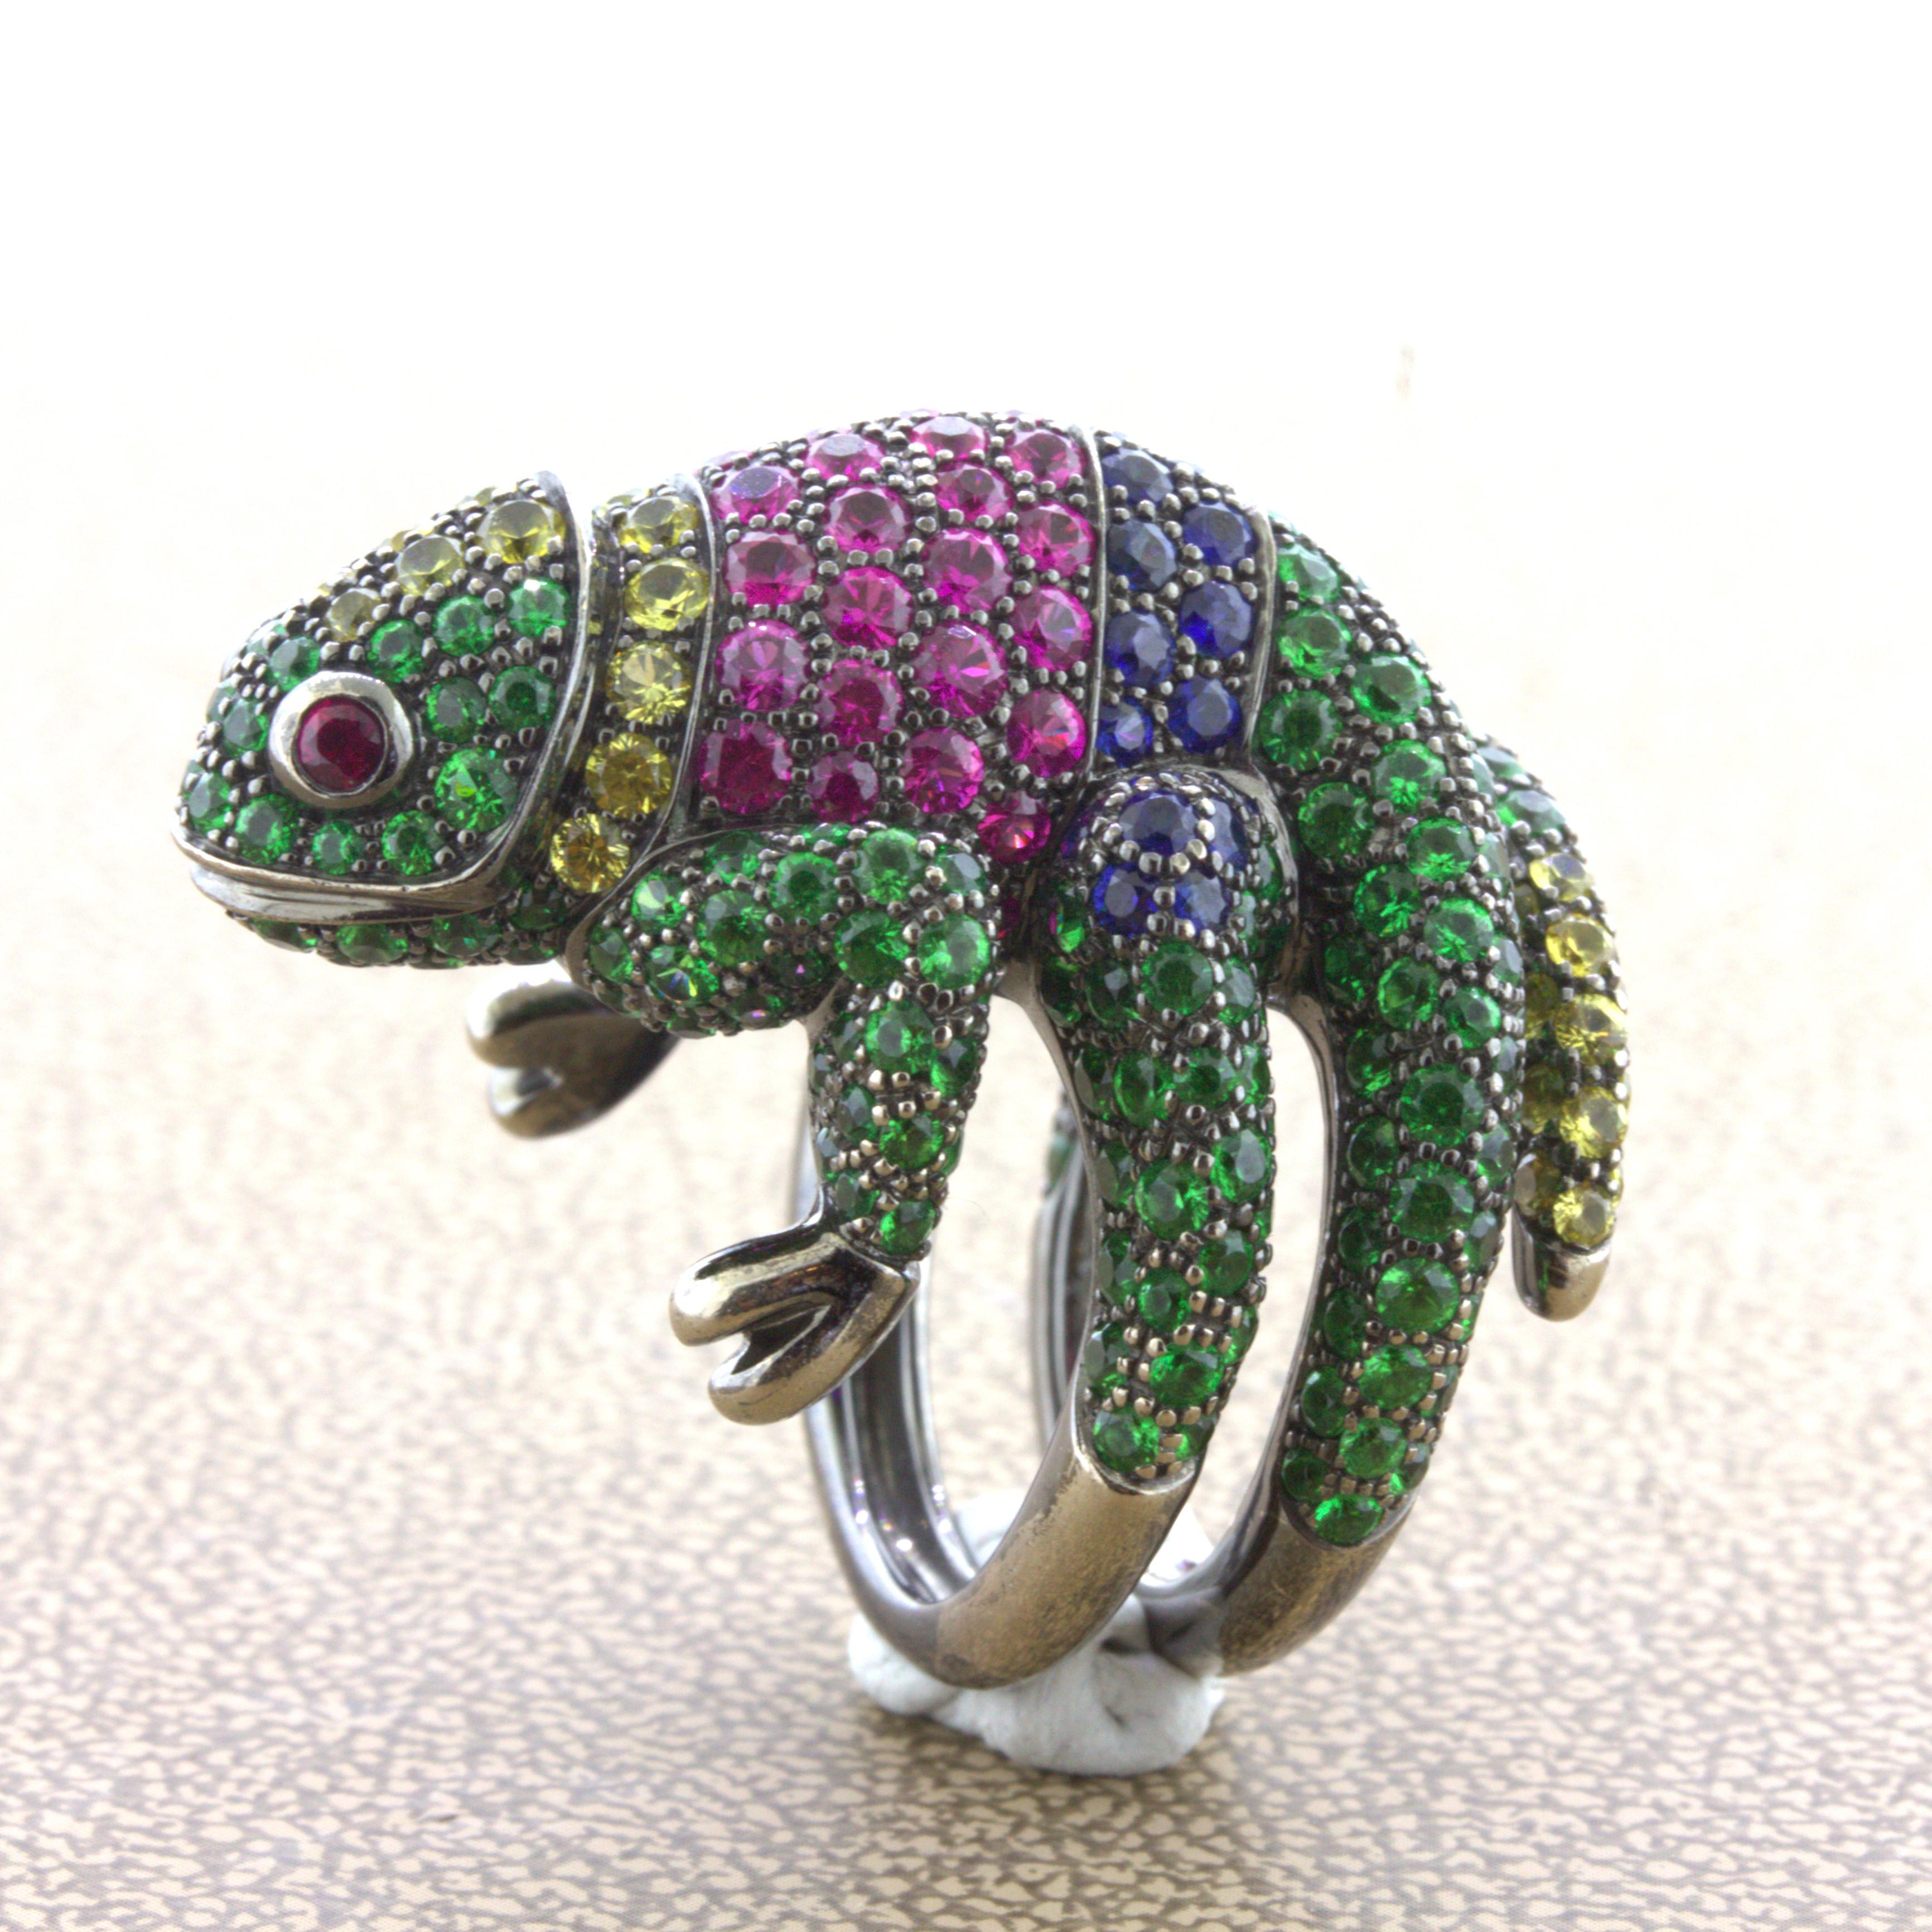 Boucheron Chameleon - For Sale on 1stDibs | boucheron chameleon ring